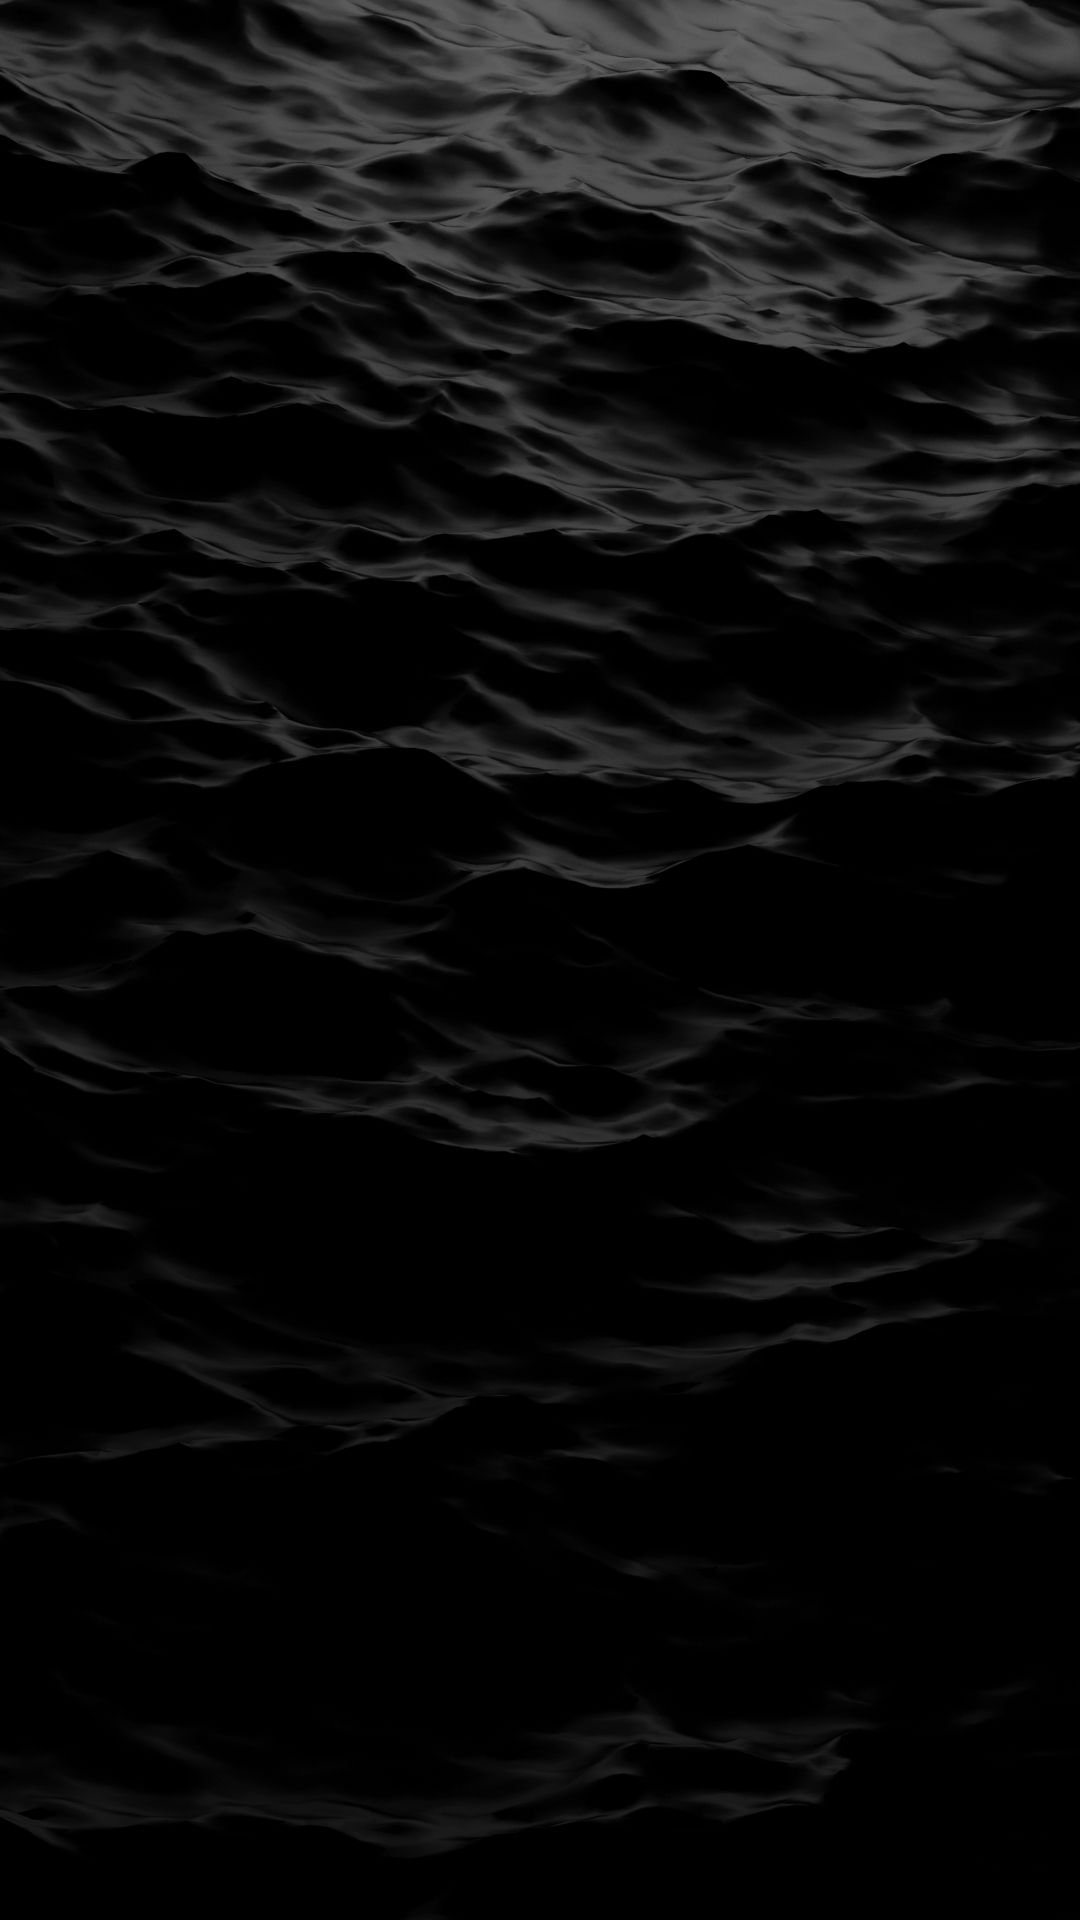  IPhone Schwarz Hintergrundbild 1080x1920. Dark Aesthetic iPhone Wallpaper Free Dark Aesthetic iPhone Background